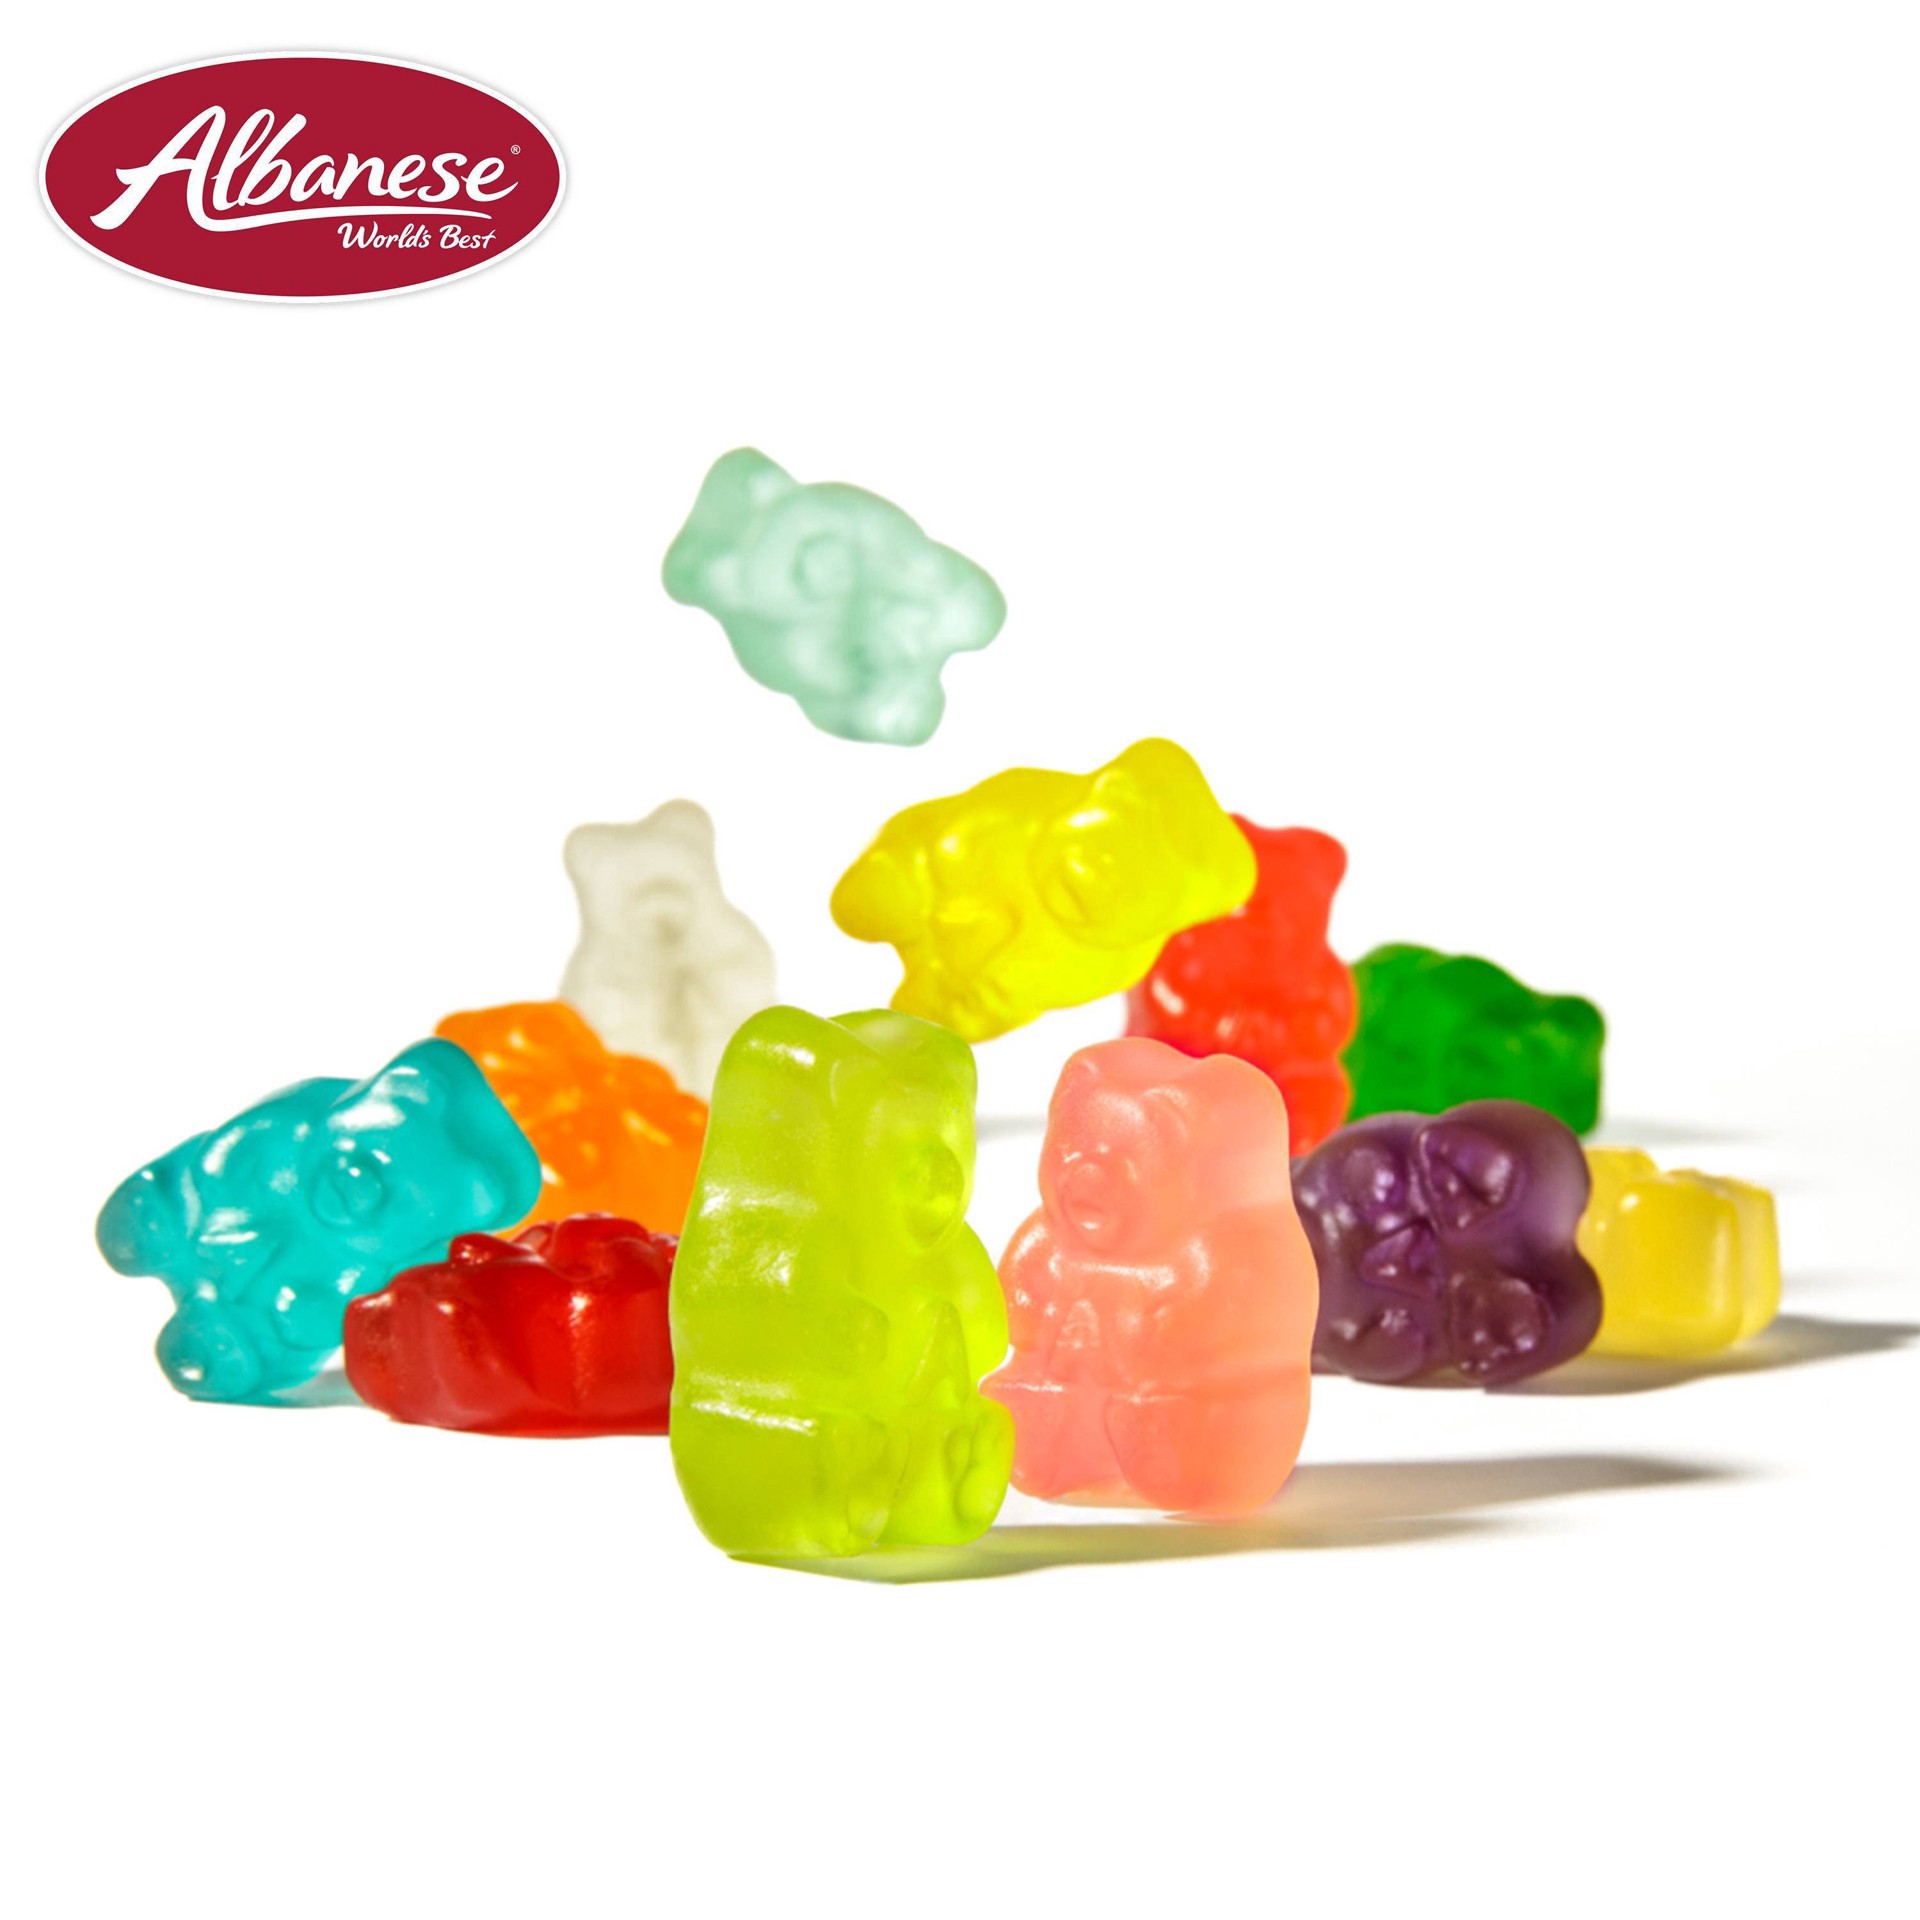 slide 9 of 17, Albanese World's Best 12 Flavor Gummi Bears, 9 oz